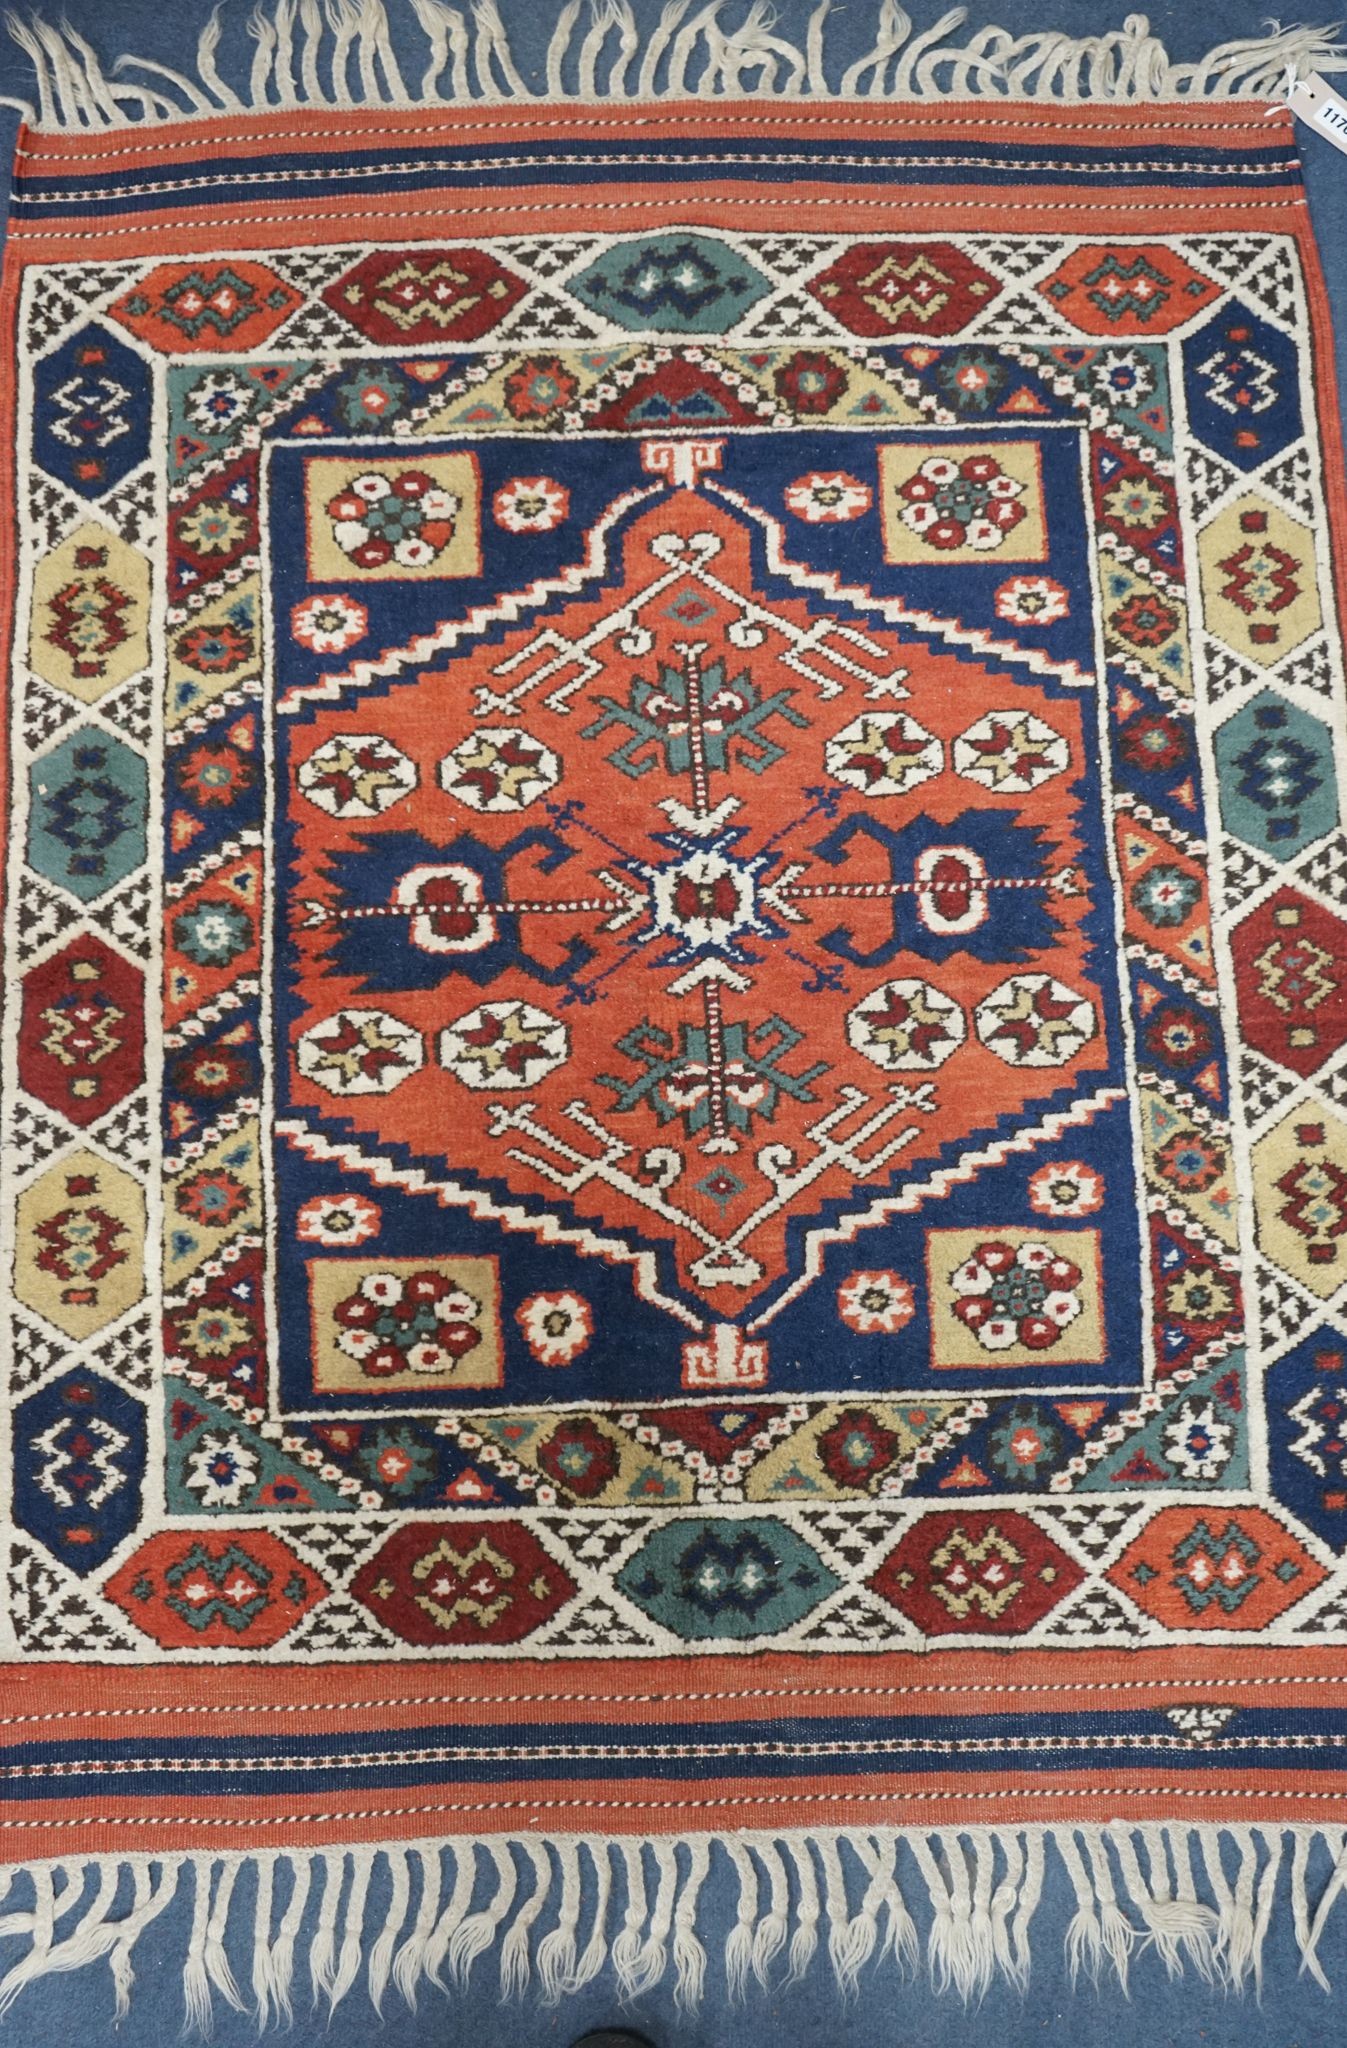 A Caucasian red ground mat, 120 x 95cm